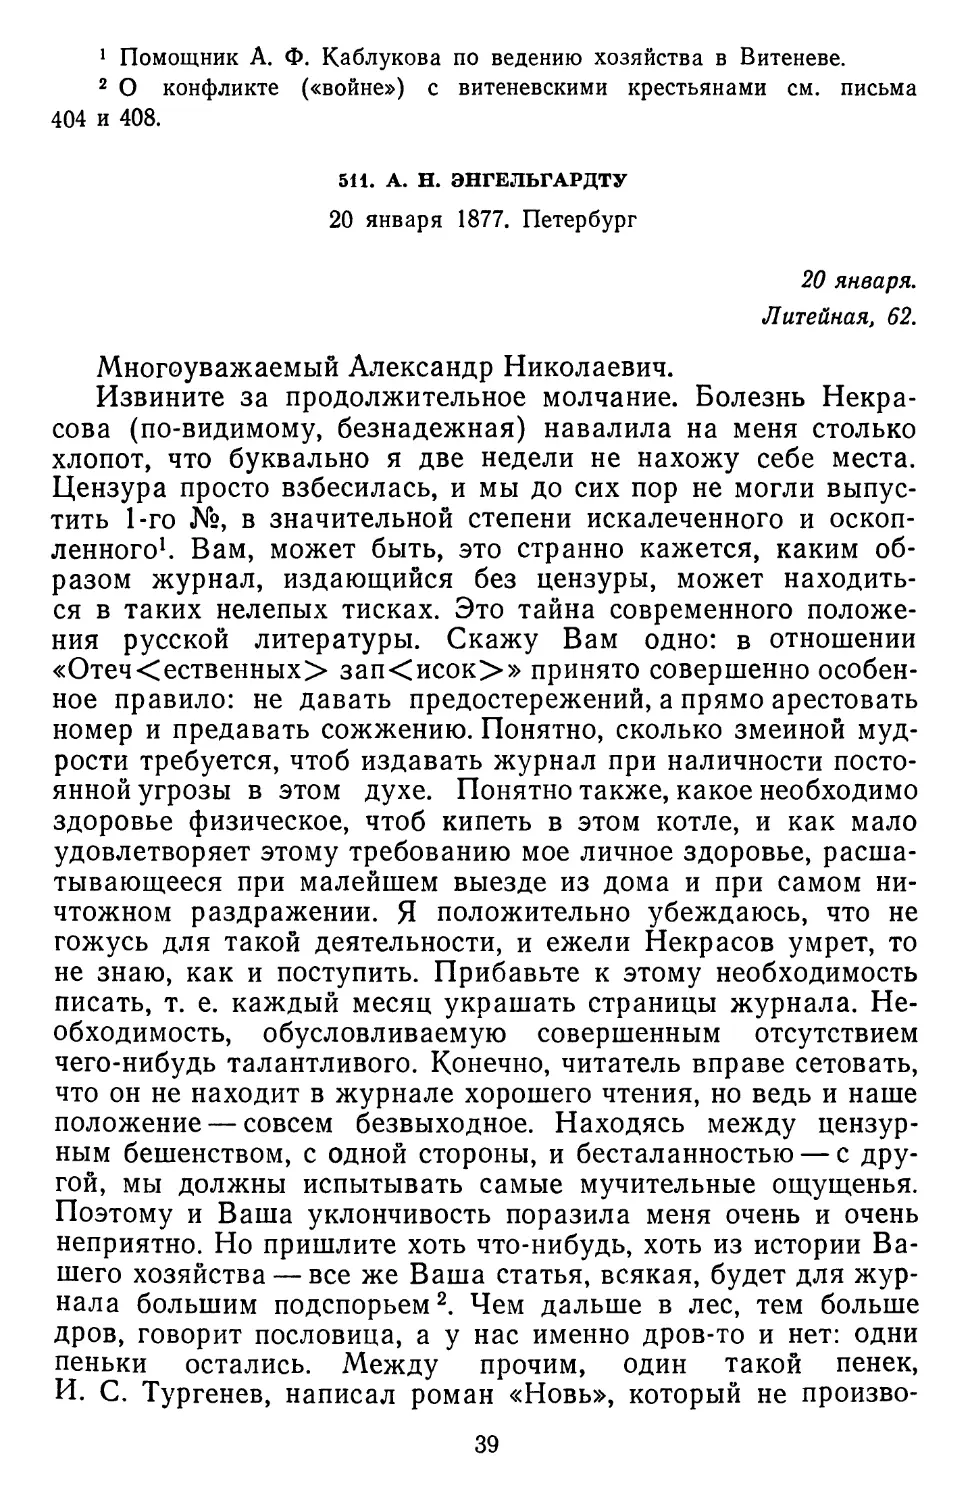 511.А. Н. Энгельгардту. 20 января 1877. Петербург